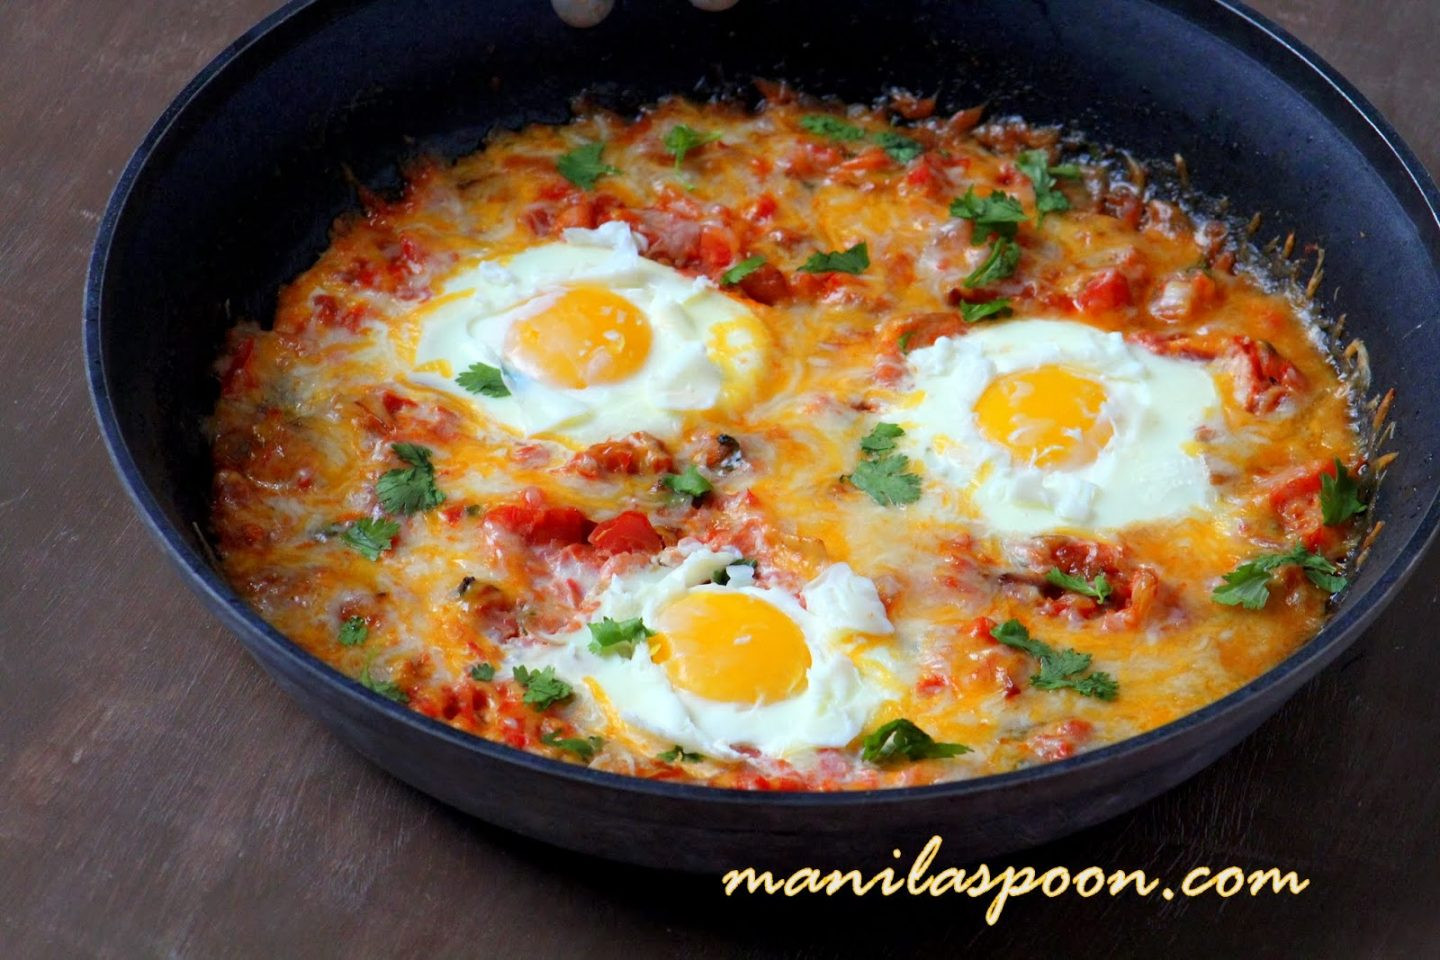 Delicious Healthy Breakfast Recipes
 10 Delicious & Healthy Breakfast Recipes Manila Spoon